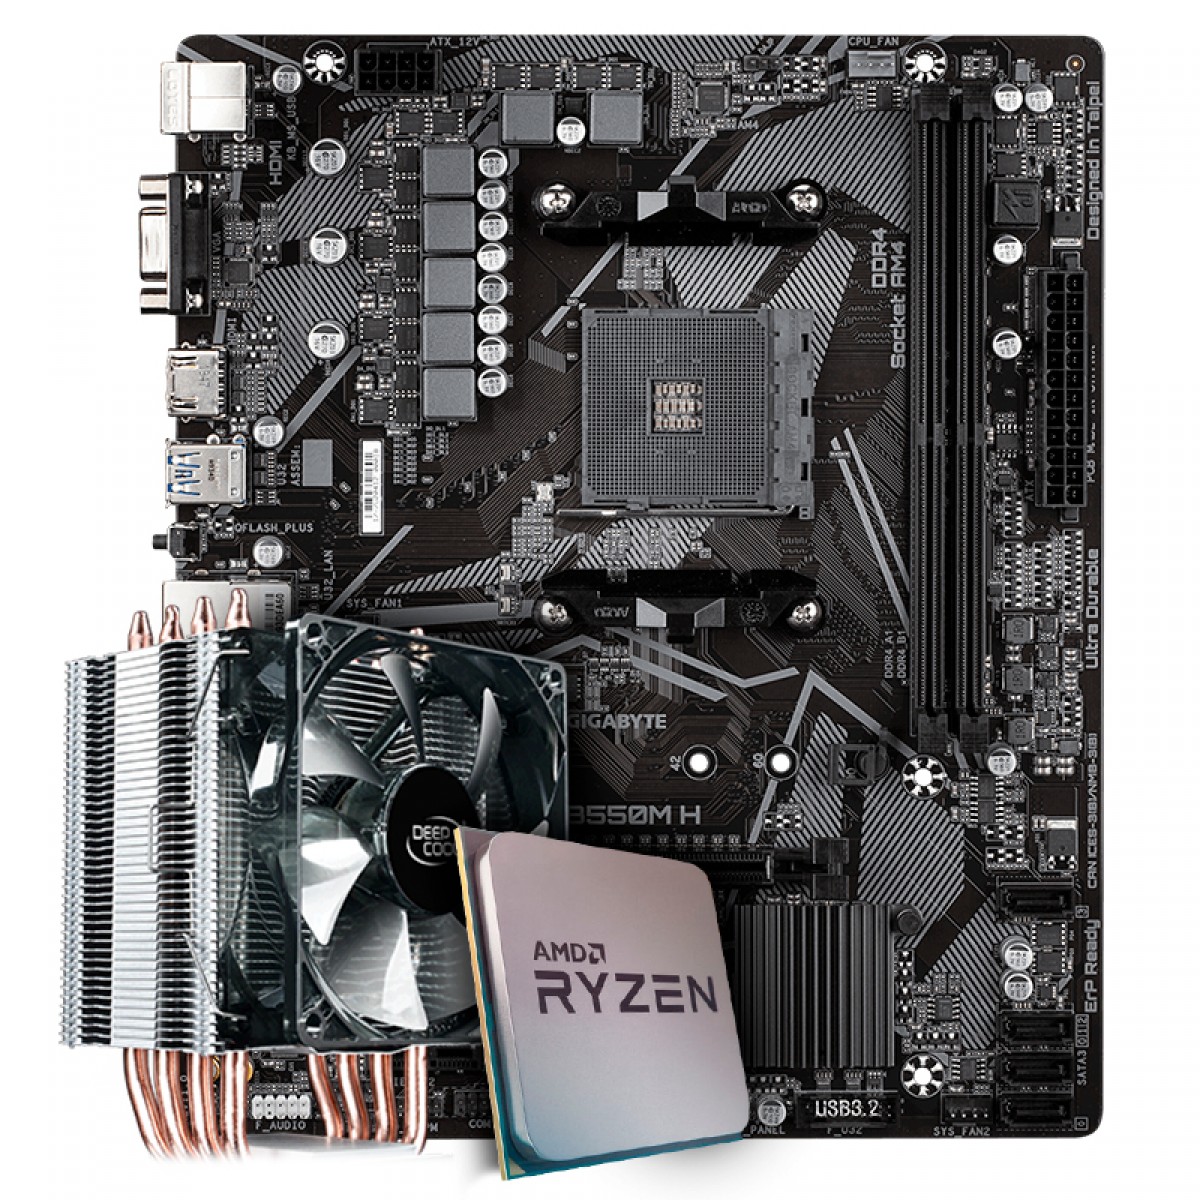 Kit Upgrade Placa Mãe Gigabyte B550M H, Chipset B550 AMD AM4 + Processador AMD Ryzen 9 3900x 3.8GHz + Cooler Deepcool Gammaxx 